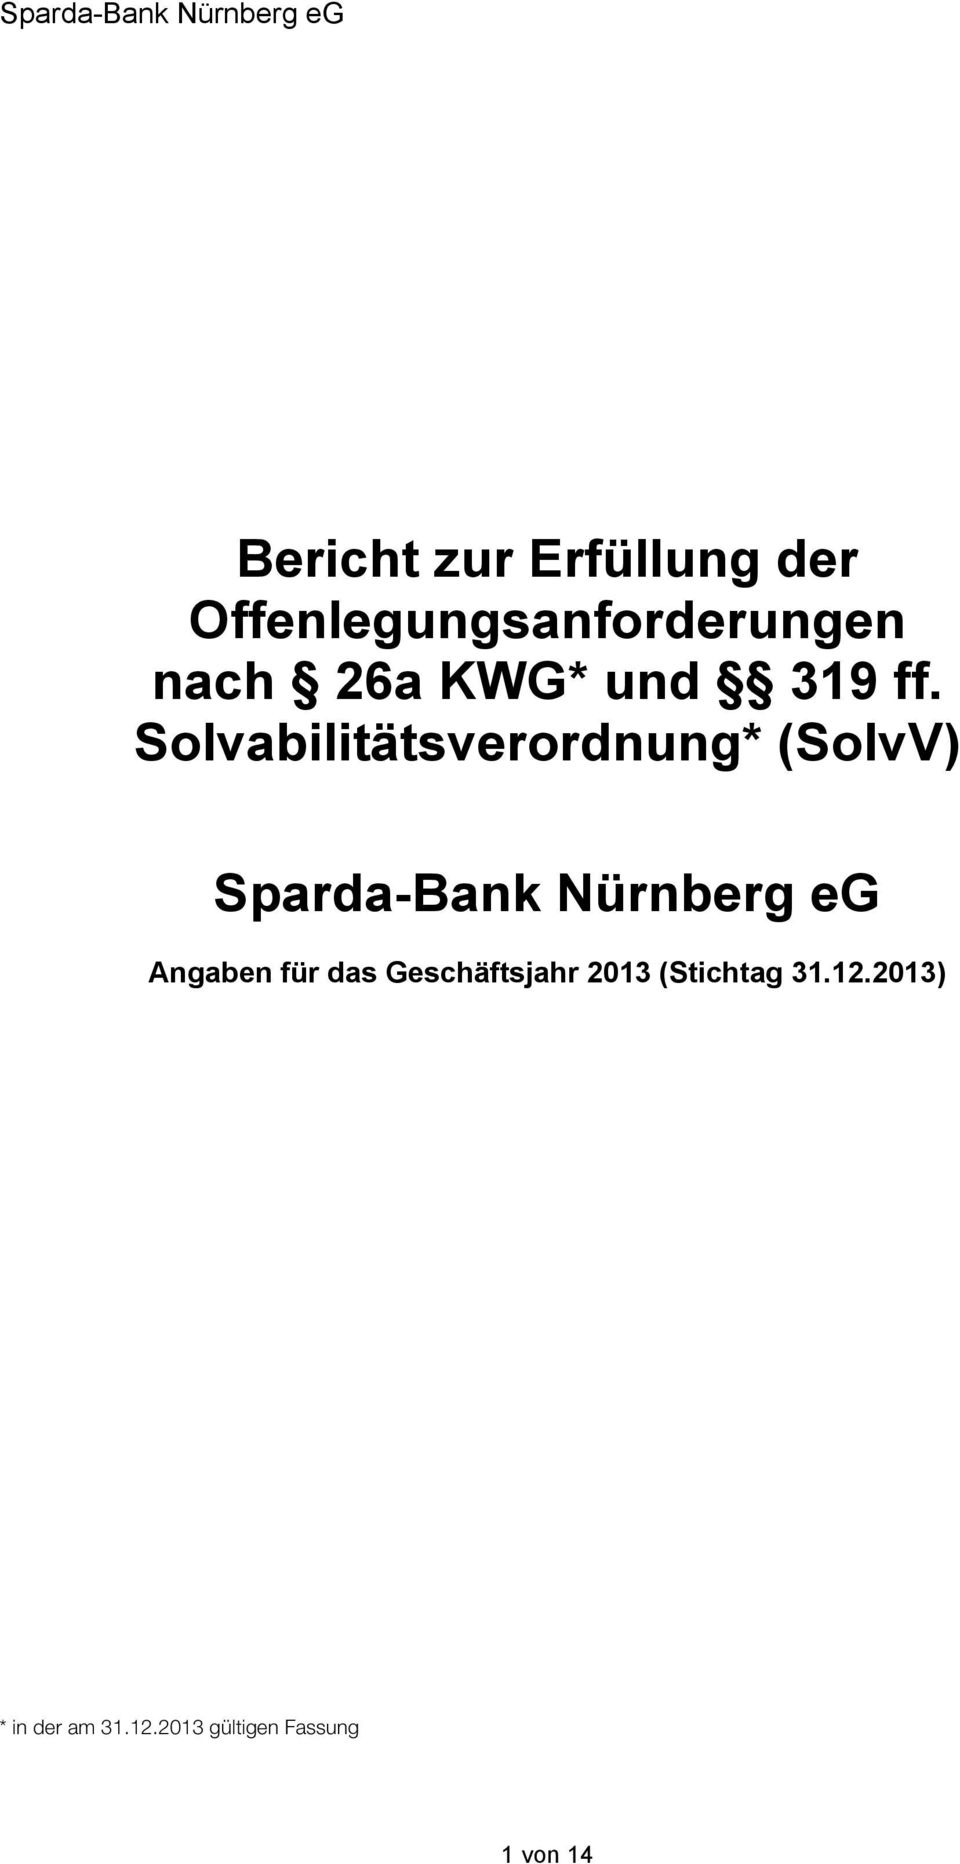 Solvabilitätsverordnung* (SolvV) Sparda-Bank Nürnberg eg